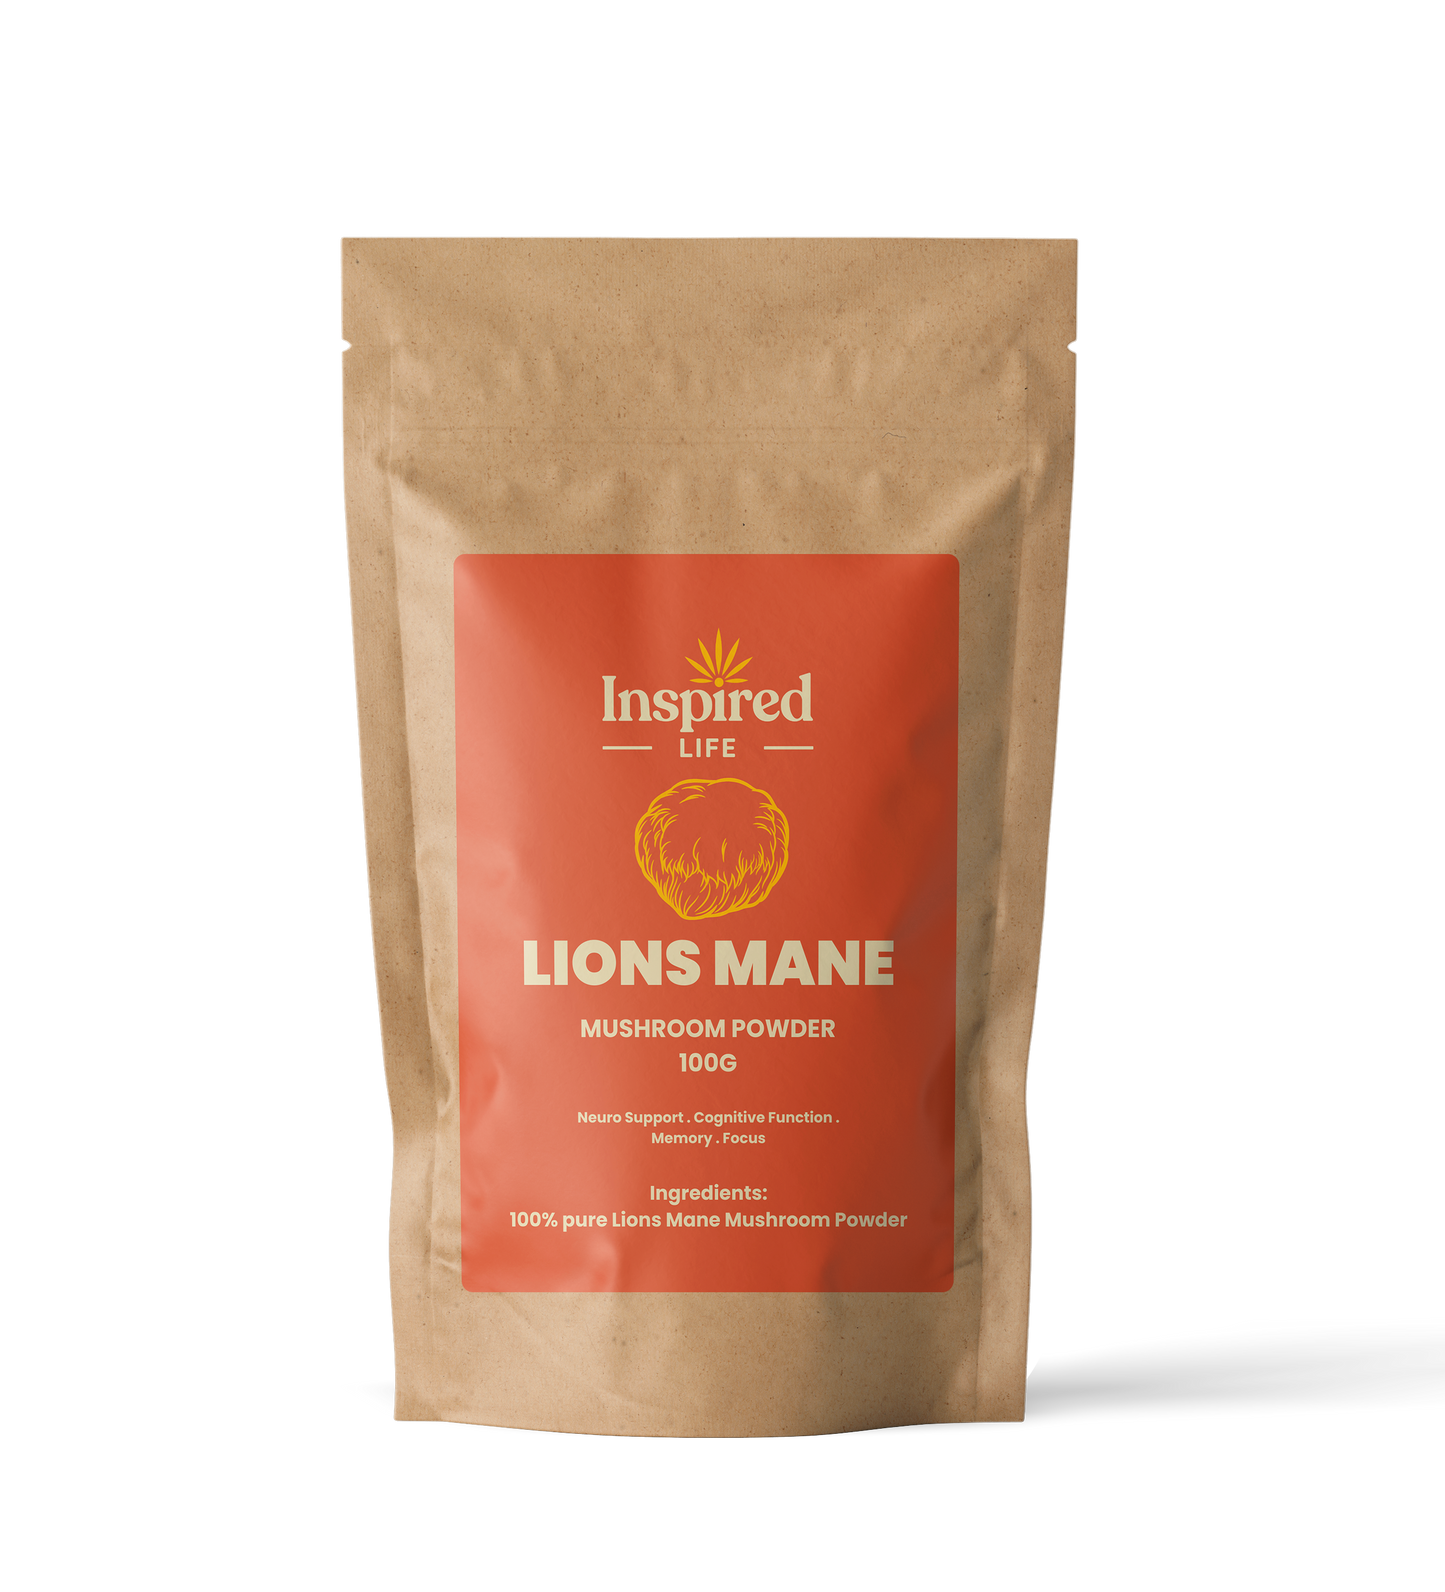 Lion's Mane Mushroom Powder - 100g 🍄